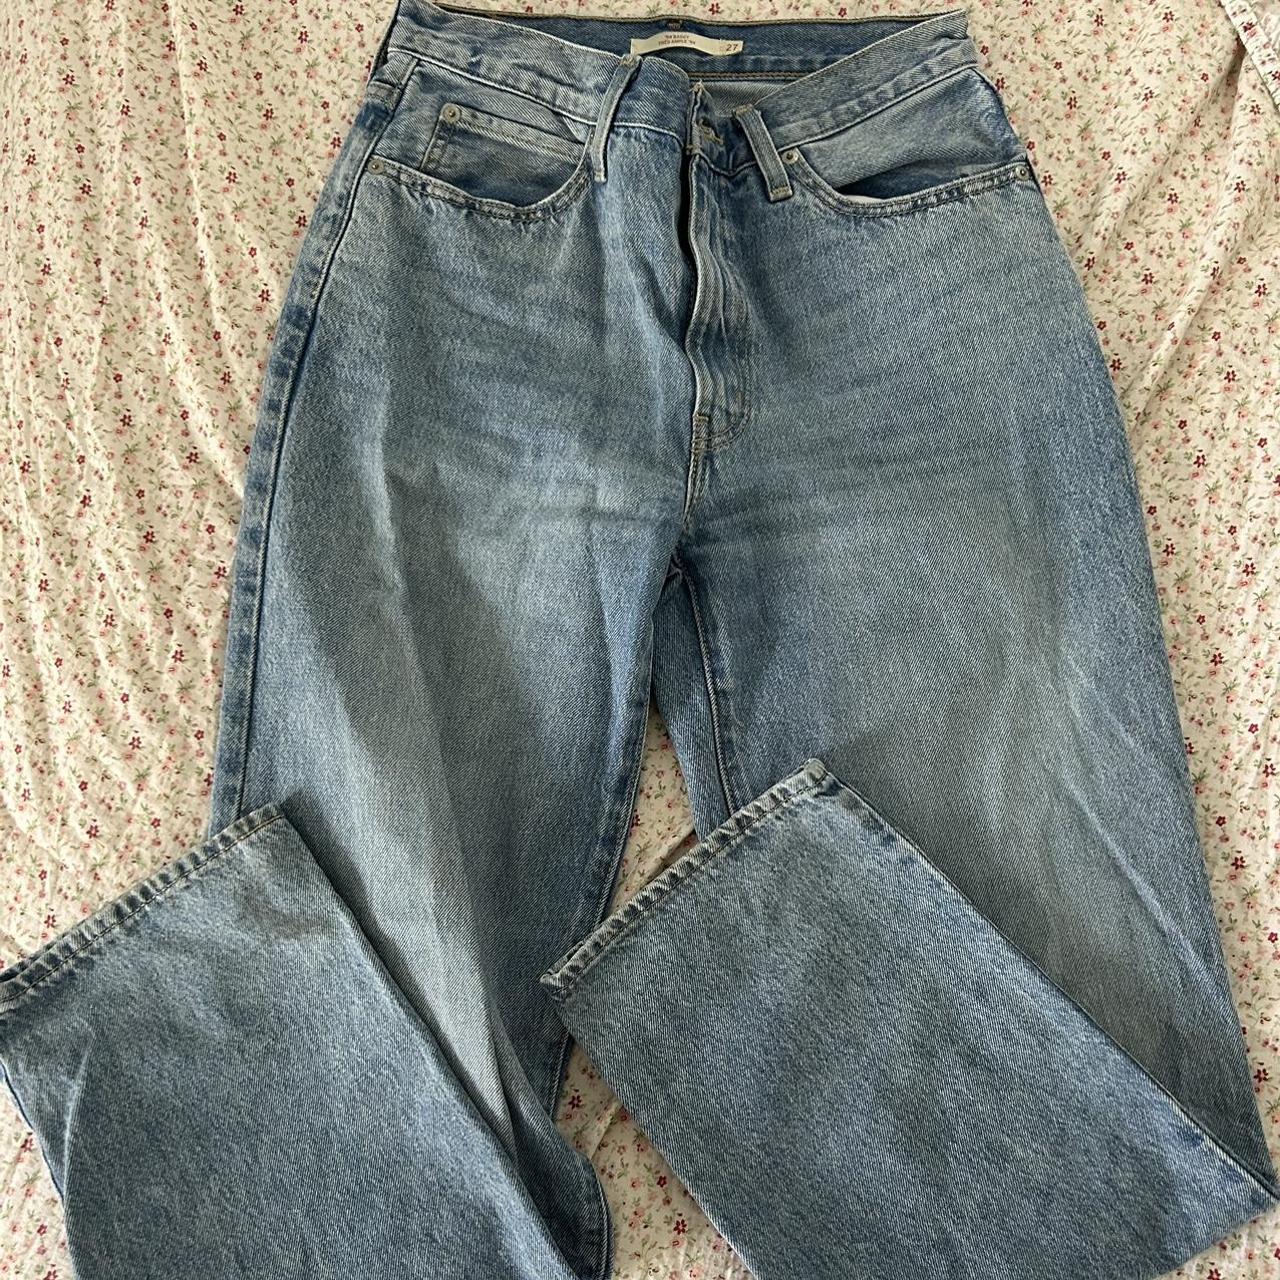 Baggy fit Levi’s jeans size 27 - Depop